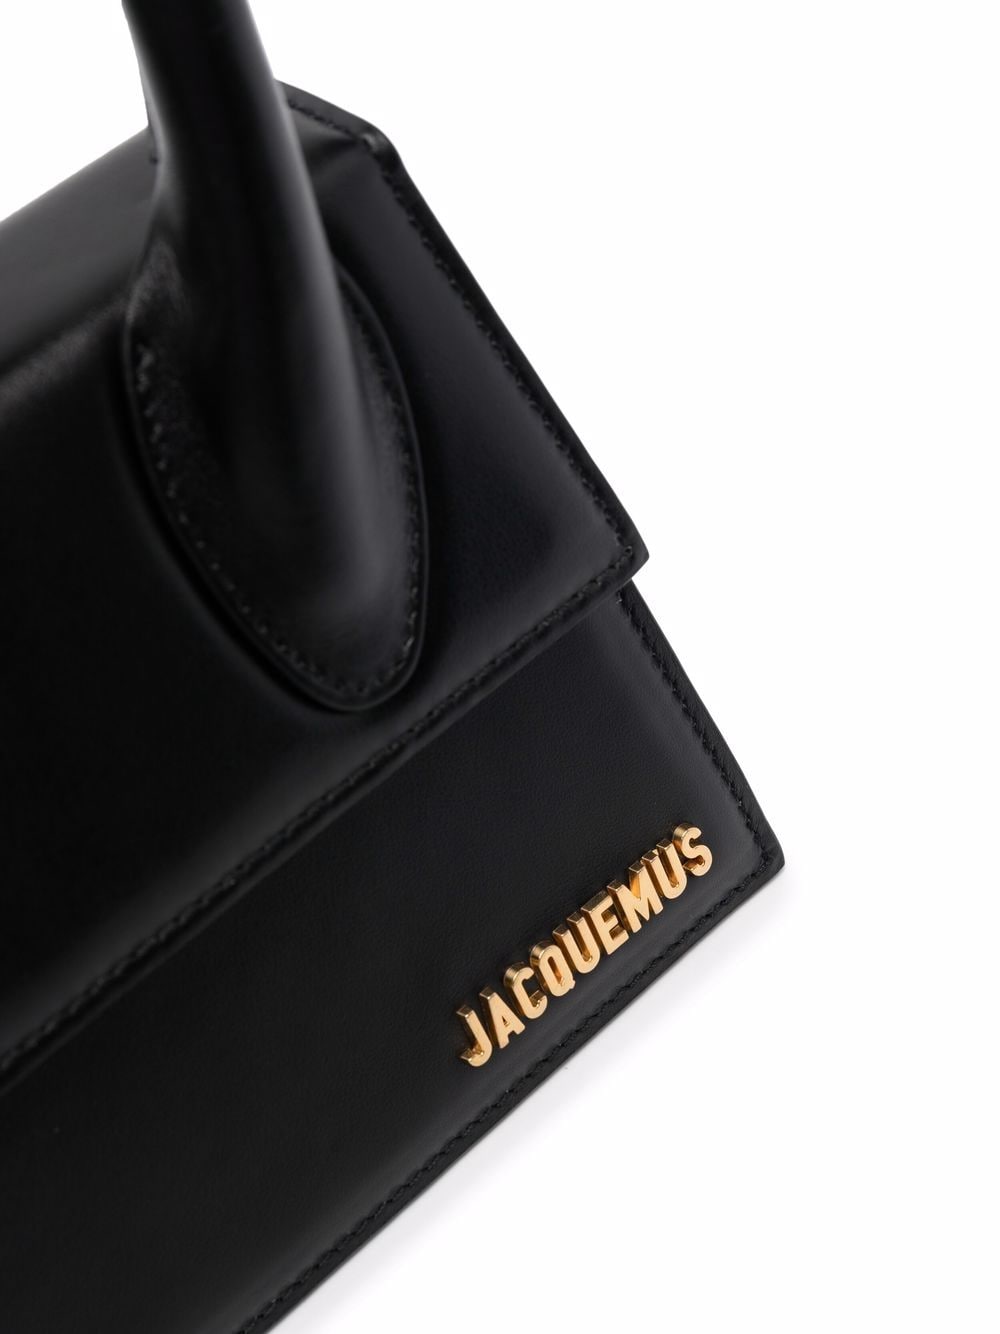 Jacquemus Le Chiquito Noeud mini bag - ShopStyle